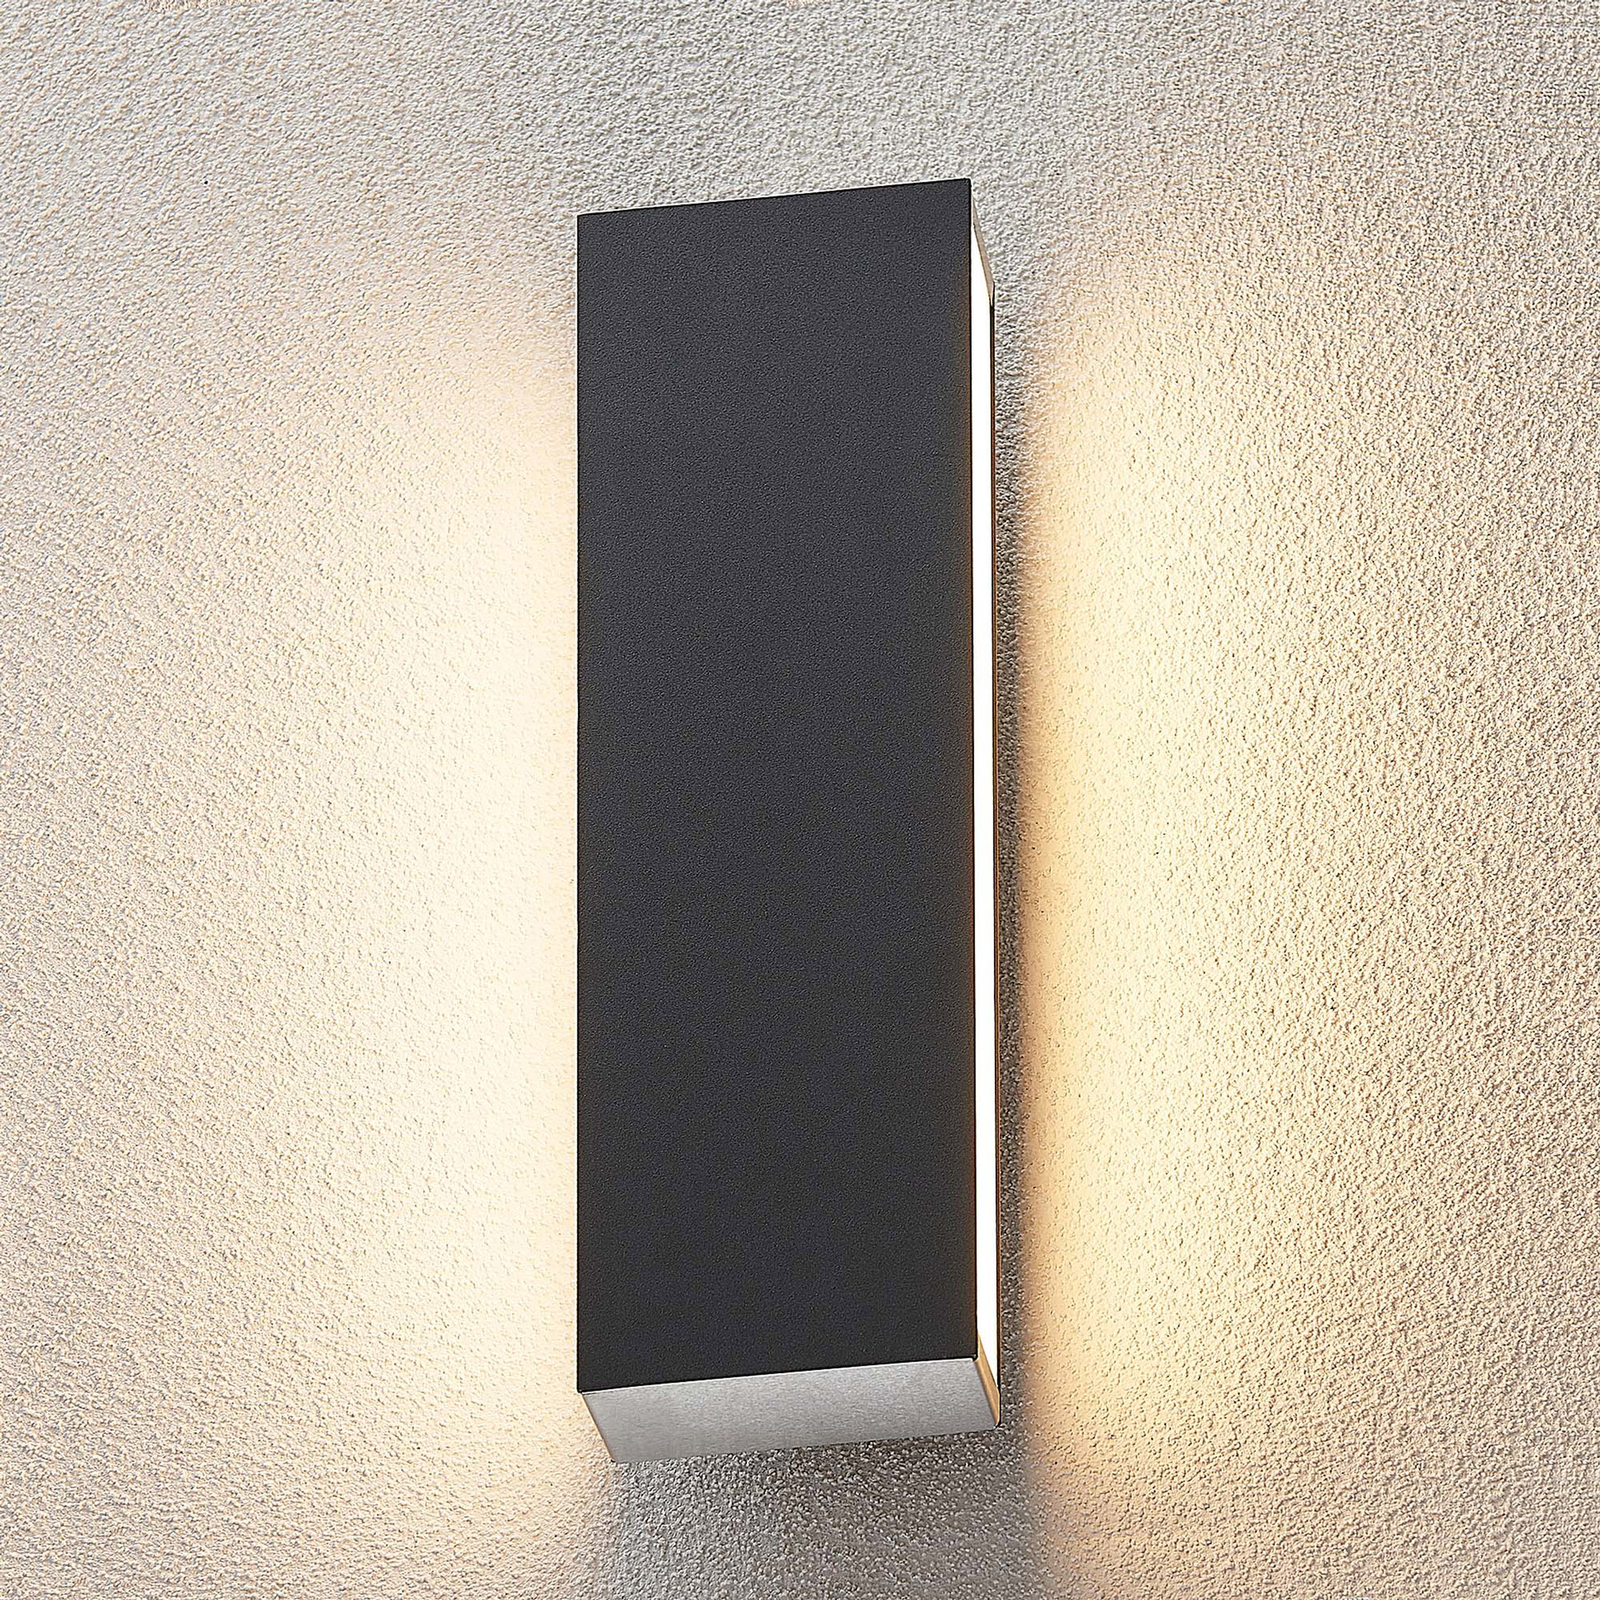 Lucande Aegisa aplique LED de exterior, angular